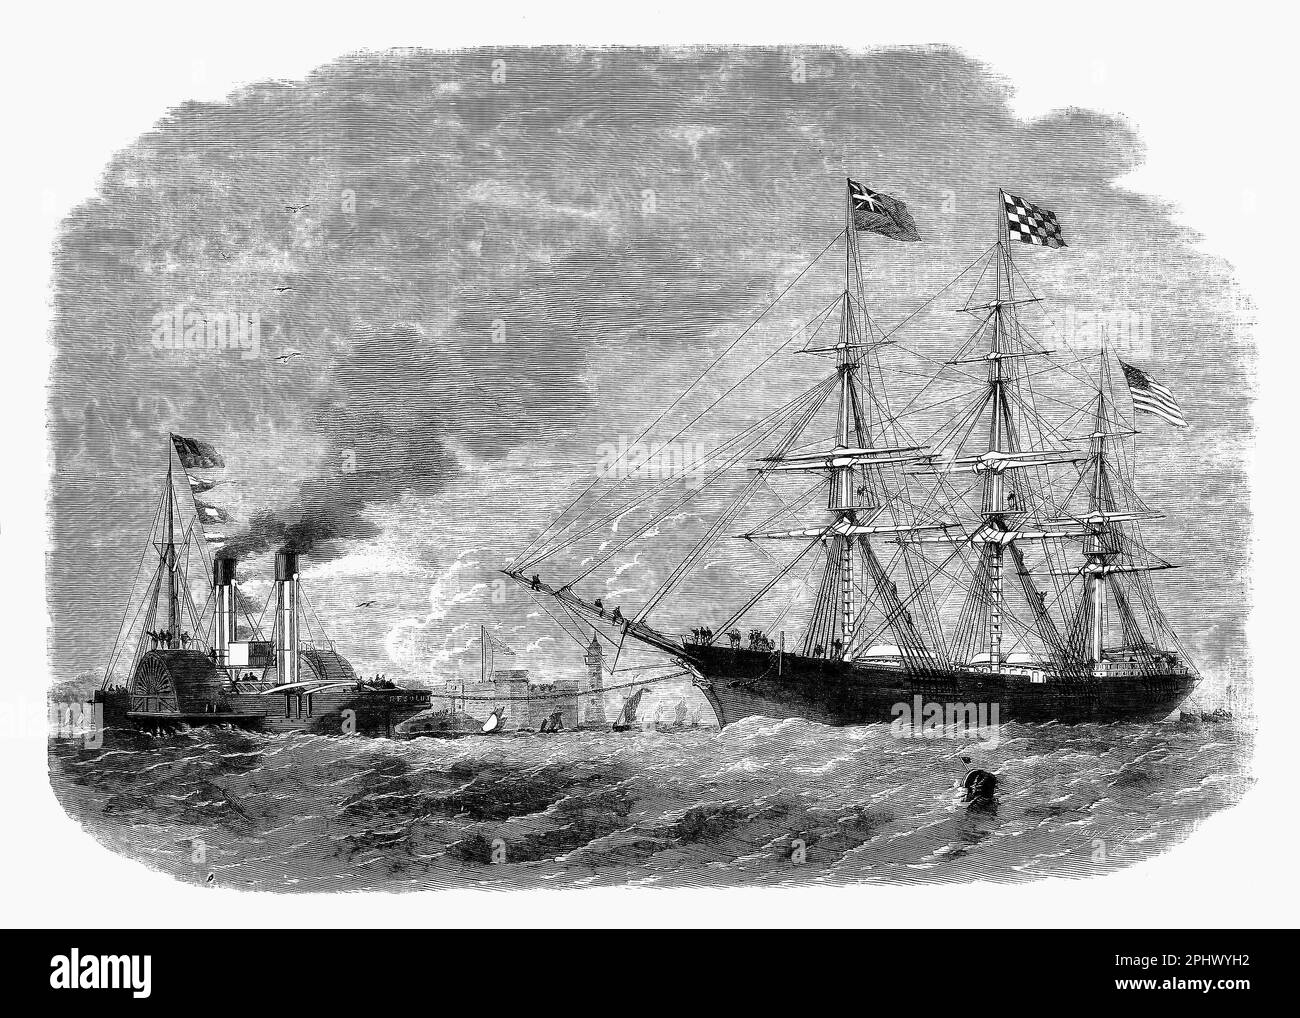 Il battello a vapore 'Resolute' che traina George Griswold nel fiume Mersey con il castello di roccia di Fort Perch sullo sfondo. Il nord-ovest dell'Inghilterra è stato direttamente influenzato dalla guerra civile americana quando Lincoln blocked i porti del sud. Ha portato alla "carestia del cotone del Lancashire" del 1862-63, quando i mulini smisero di funzionare. Il 9th febbraio 1863, la nave di soccorso George Griswold trasportava scatole di pancetta e pane, sacchetti di riso e mais, e 15.000 barili di farina, destinati alla popolazione affamata del Lancashire in riconoscimento del loro sostegno agli stati settentrionali durante la guerra civile americana. Foto Stock